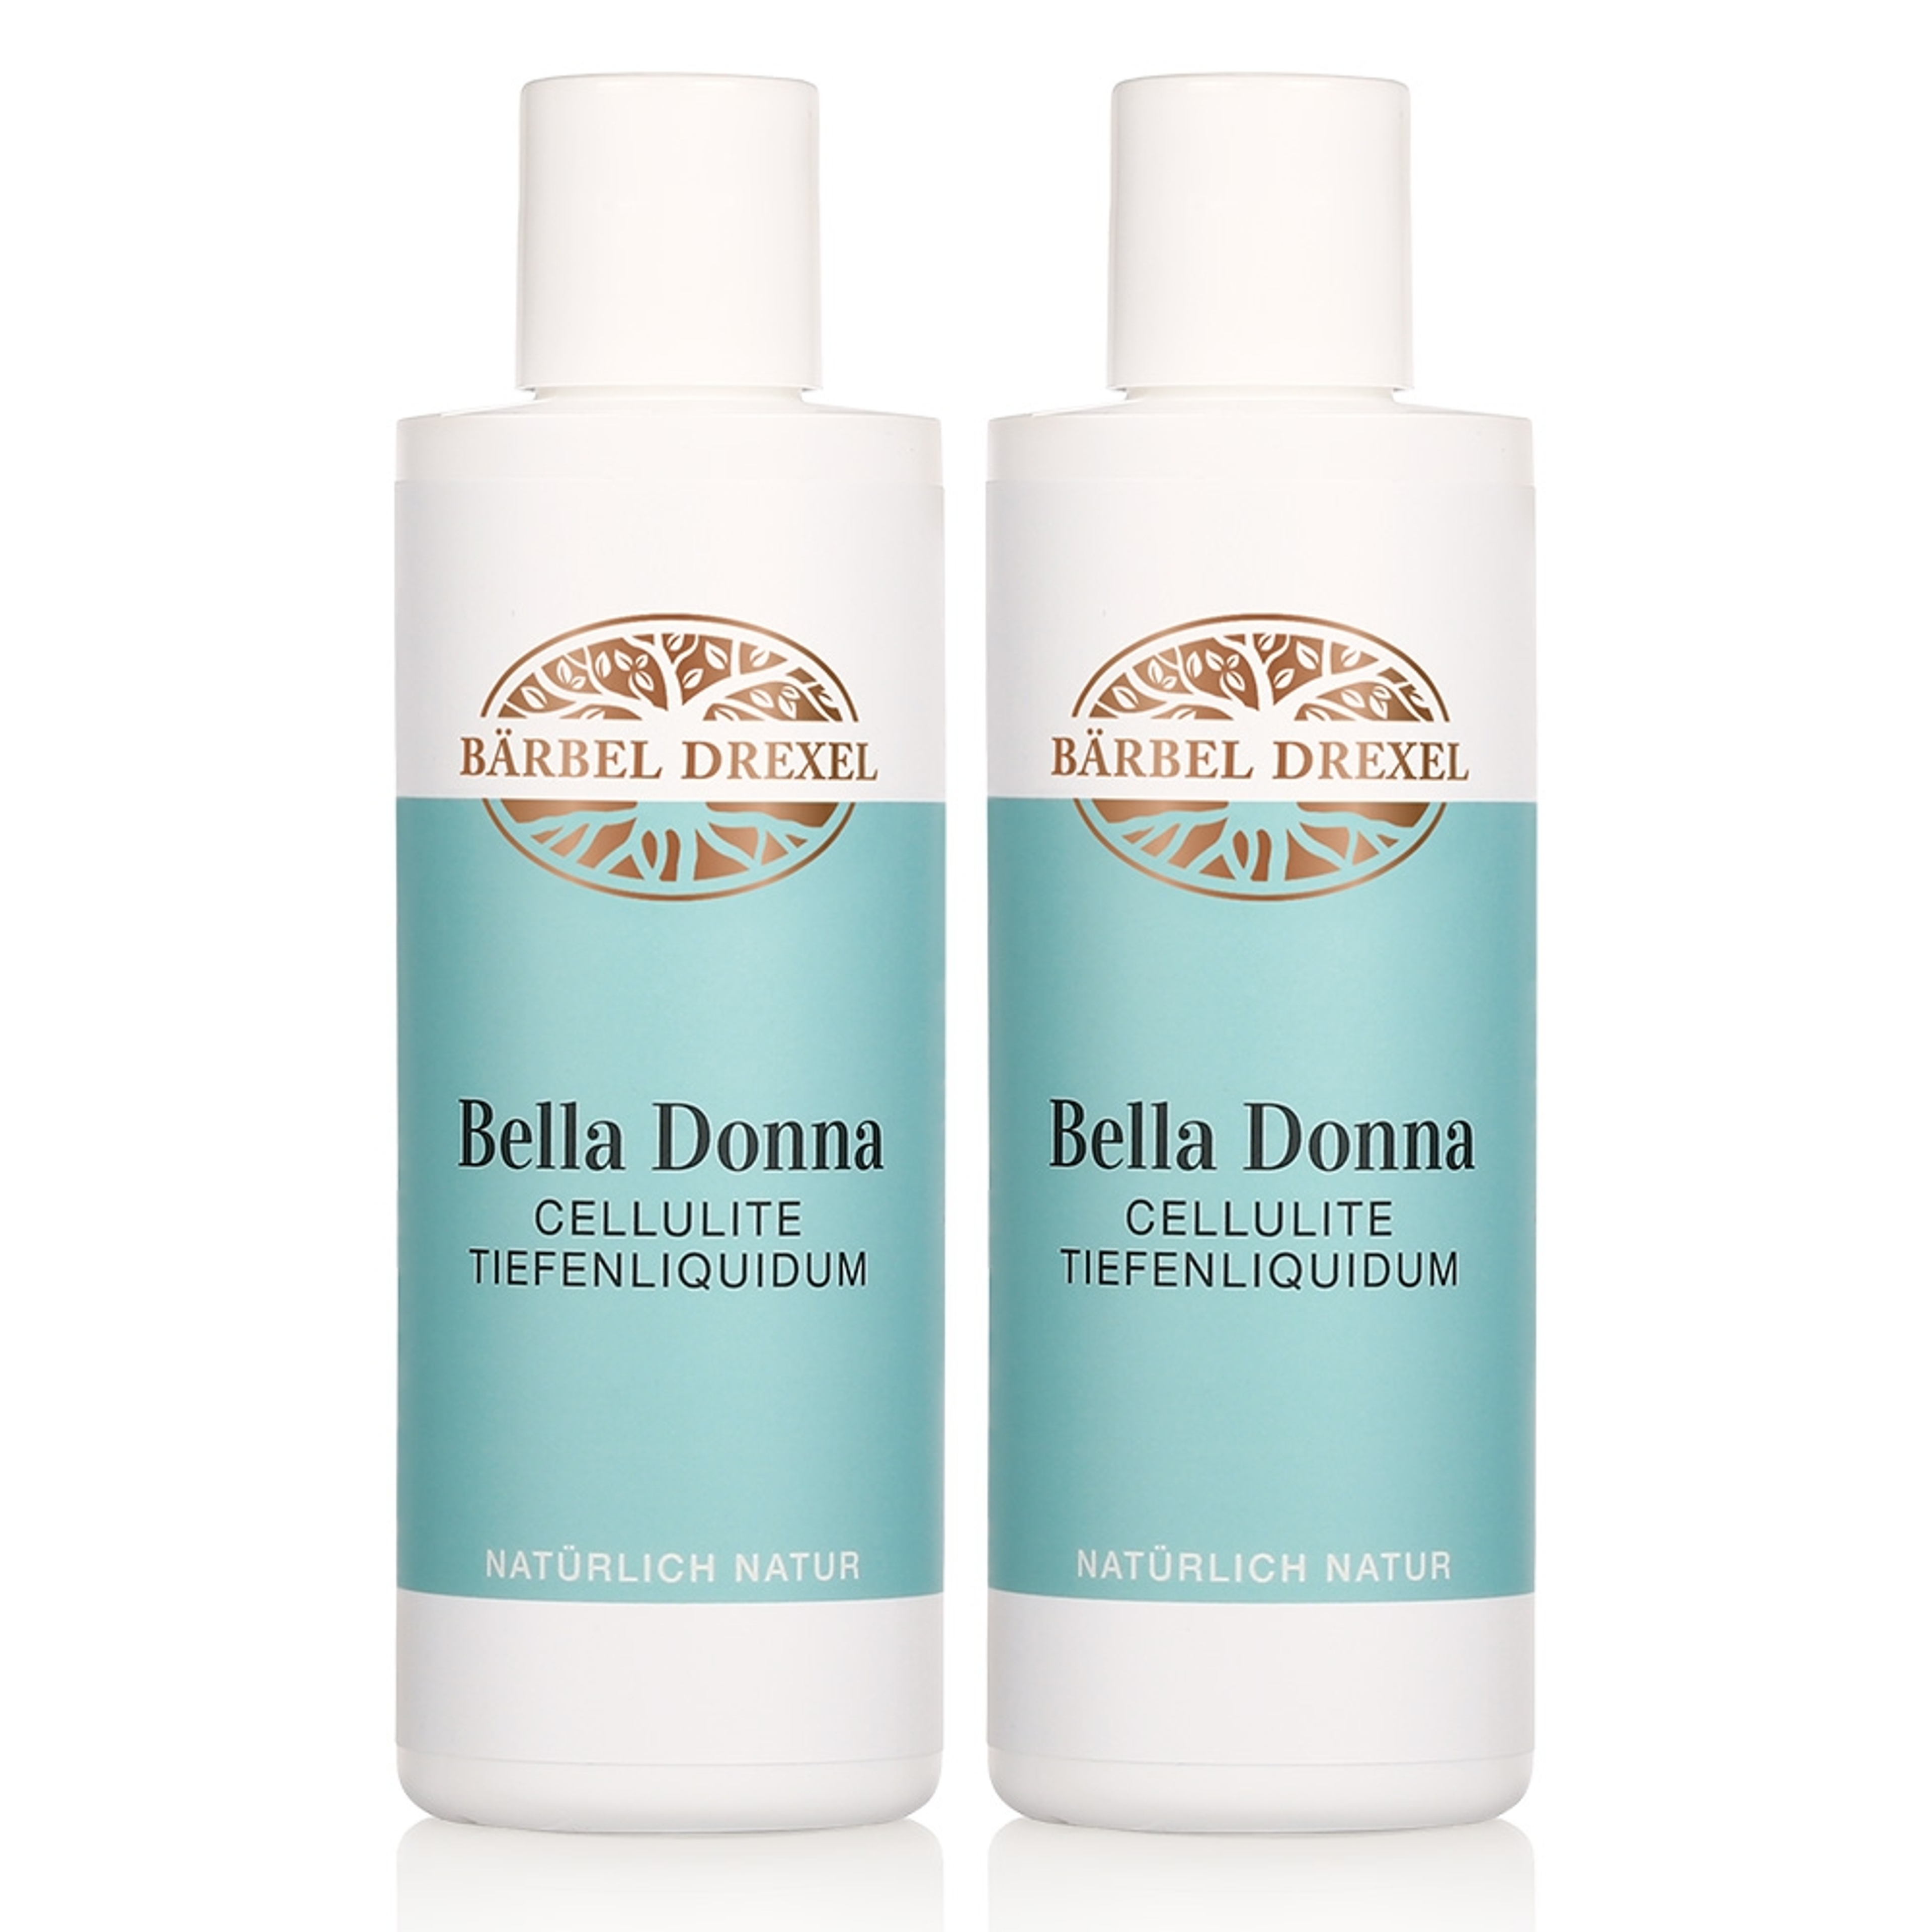 Duo Bella Donna Cellulite Tiefenliquidum, 2 x 200ml